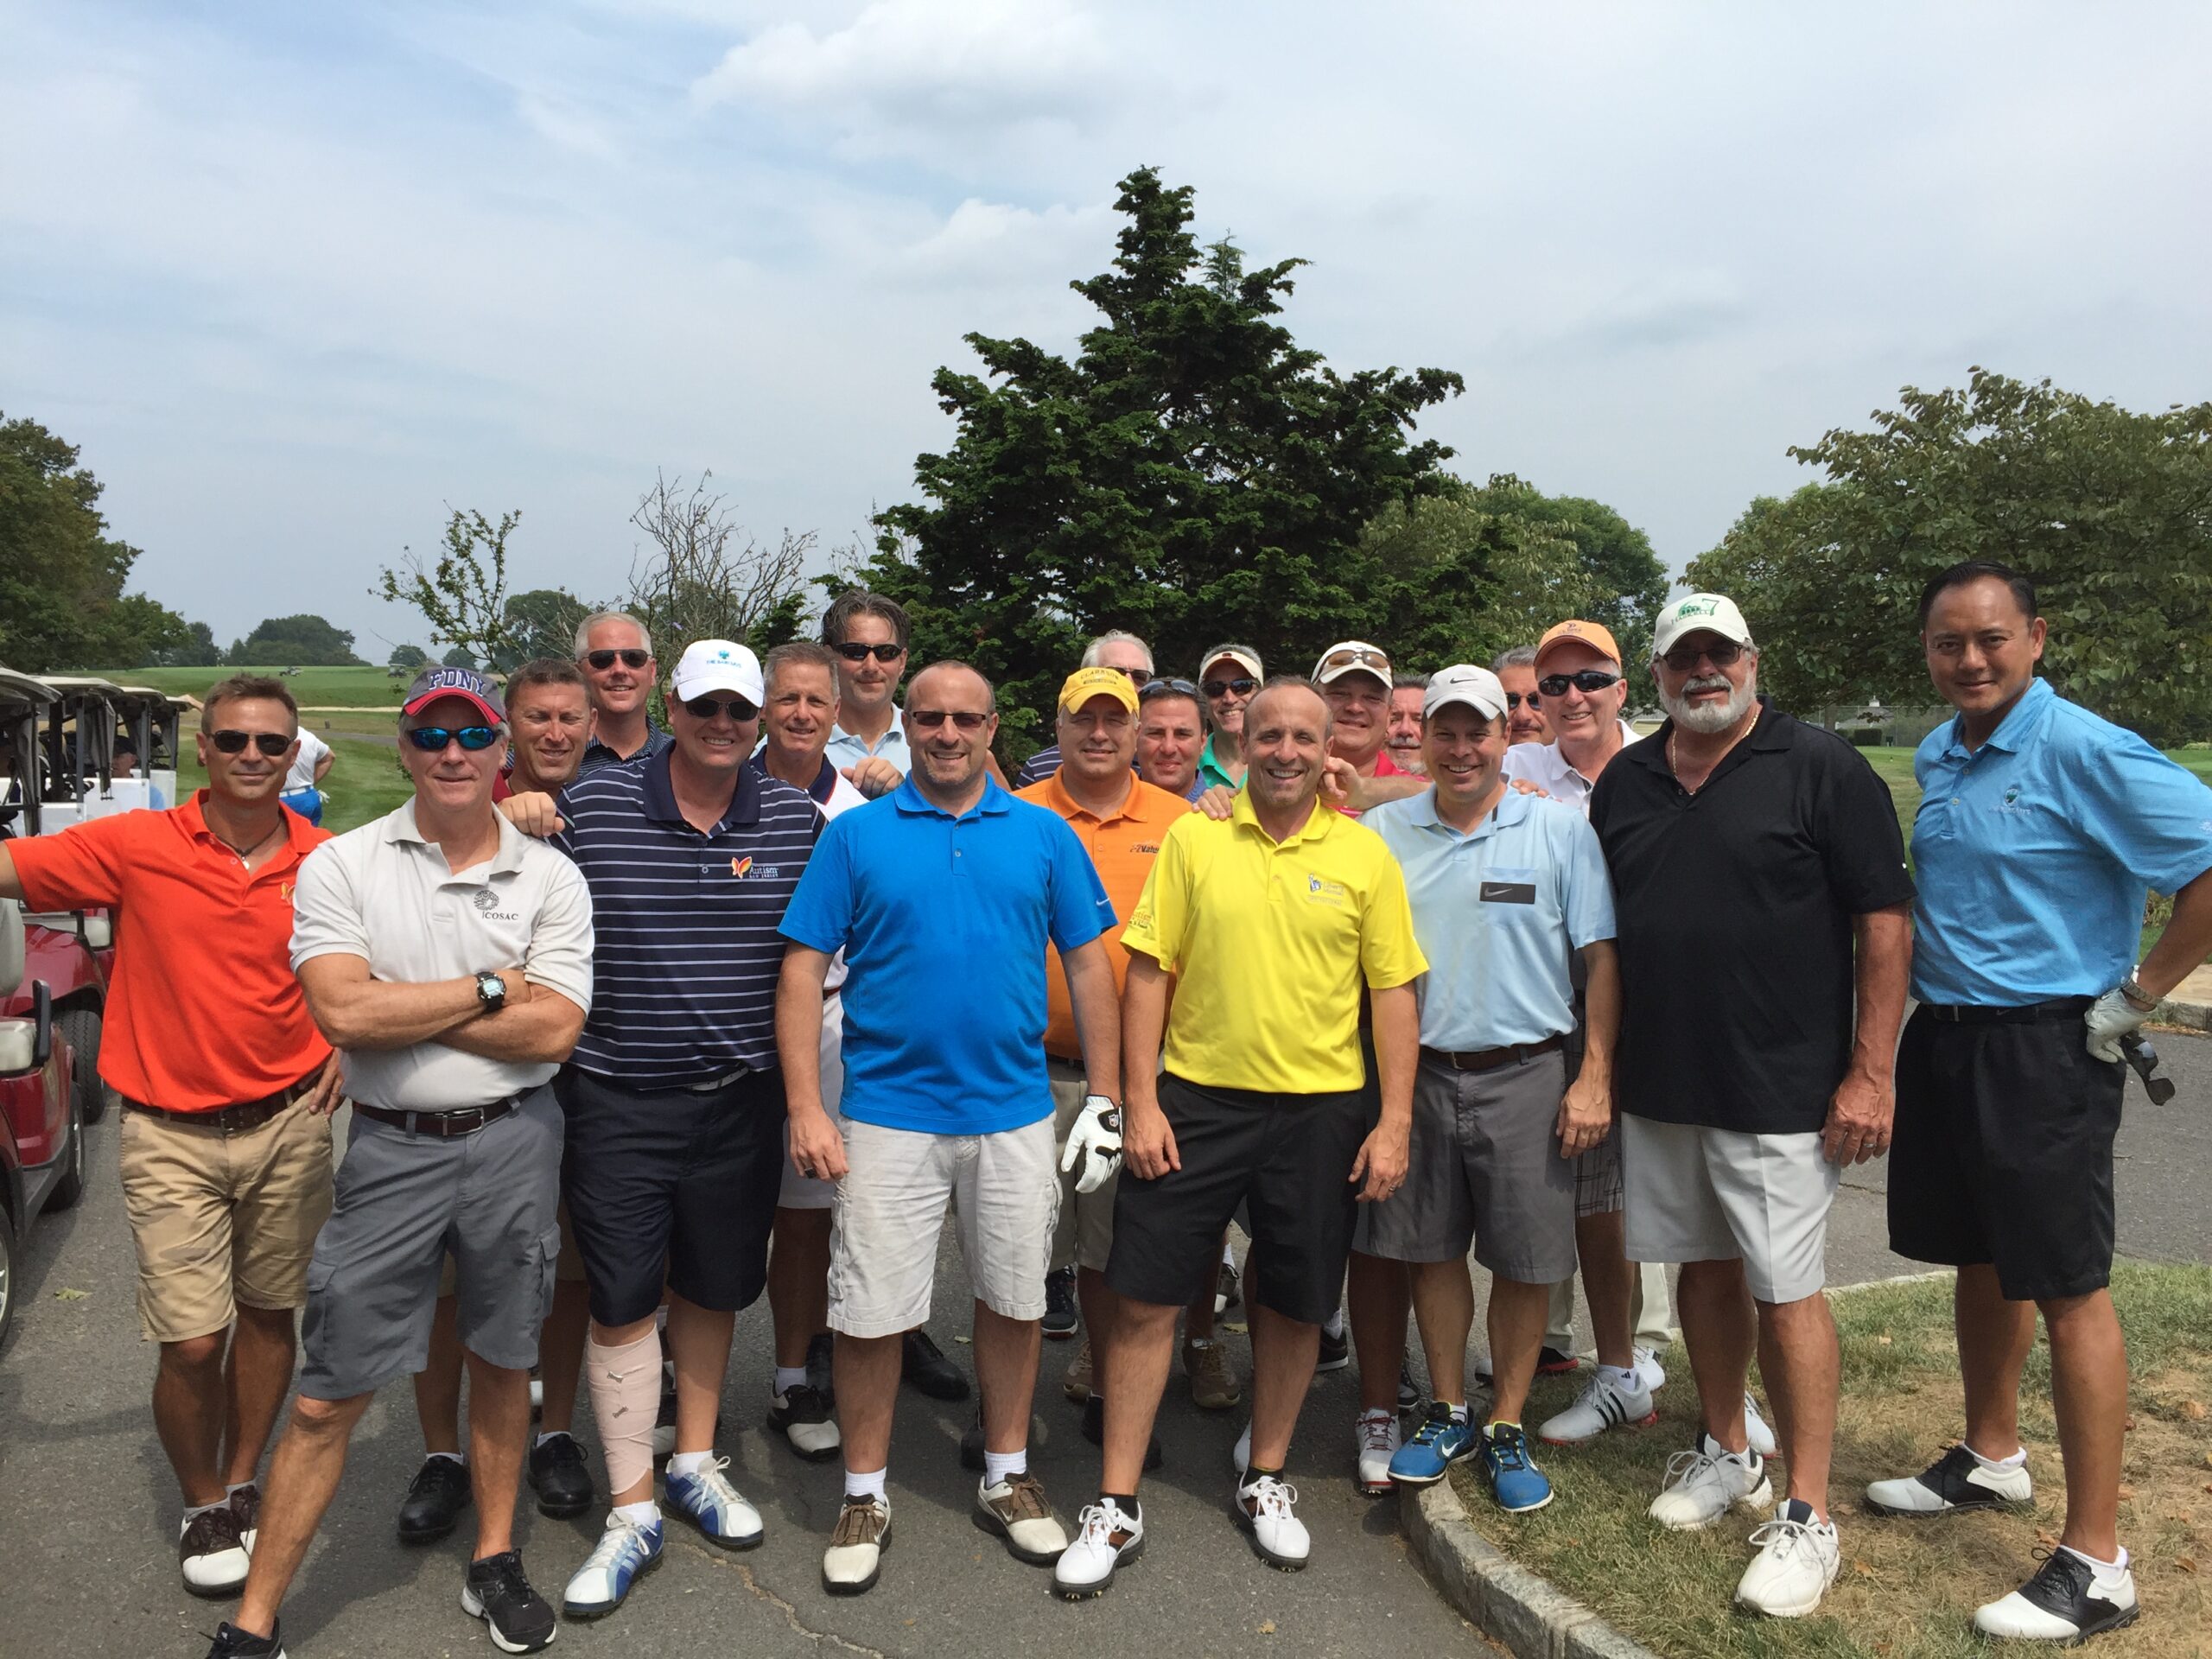 Golf Outing for Autism NJ - Aquino Family Foundation 